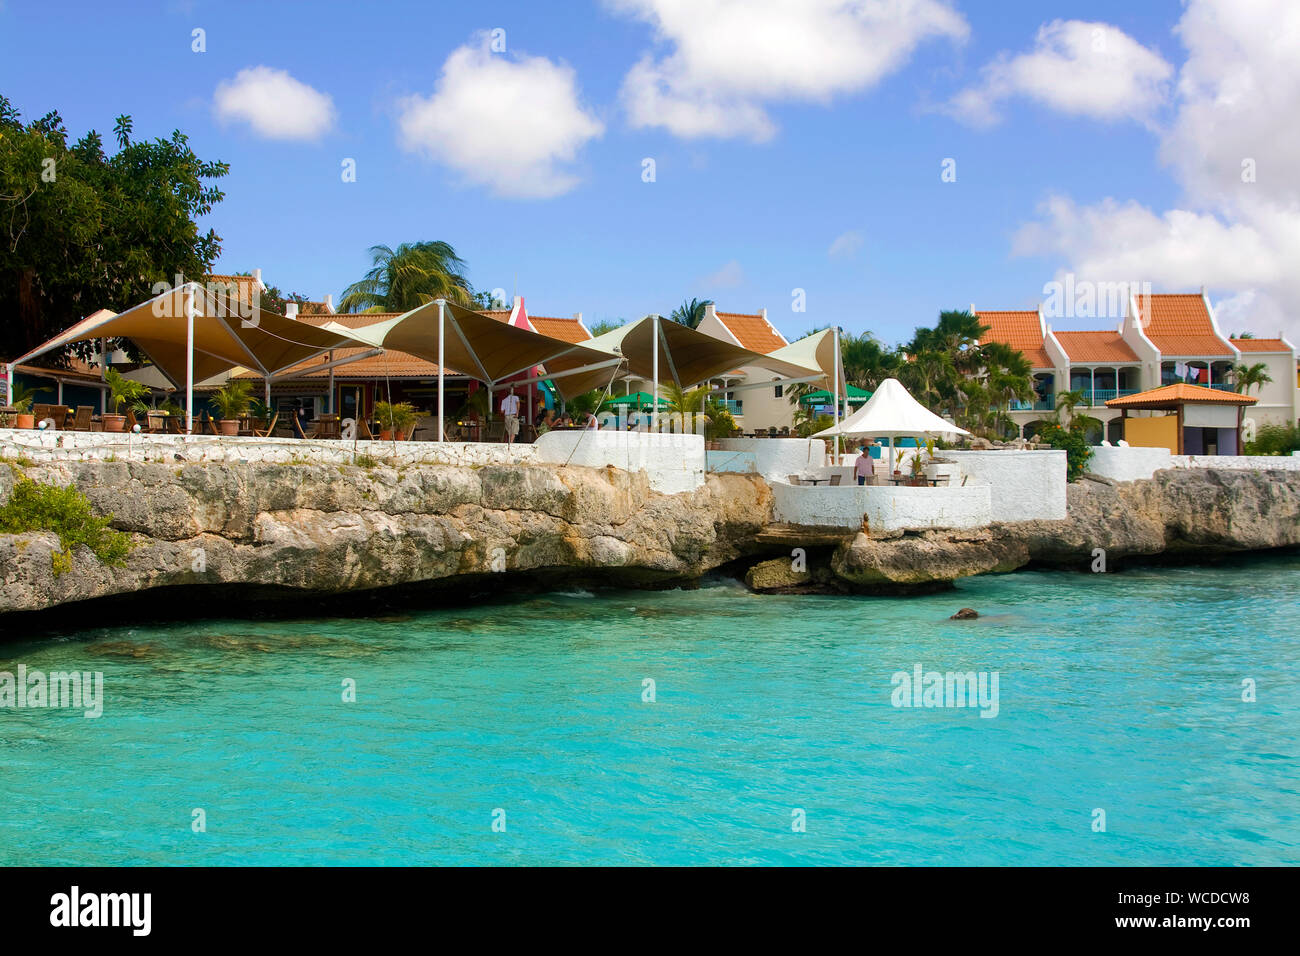 Captain Don's Habitat, berühmten Resort Tauchen hotel, Kralendijk, Bonaire, Niederländische Antillen, Antillen, Karibik, Karibik Stockfoto